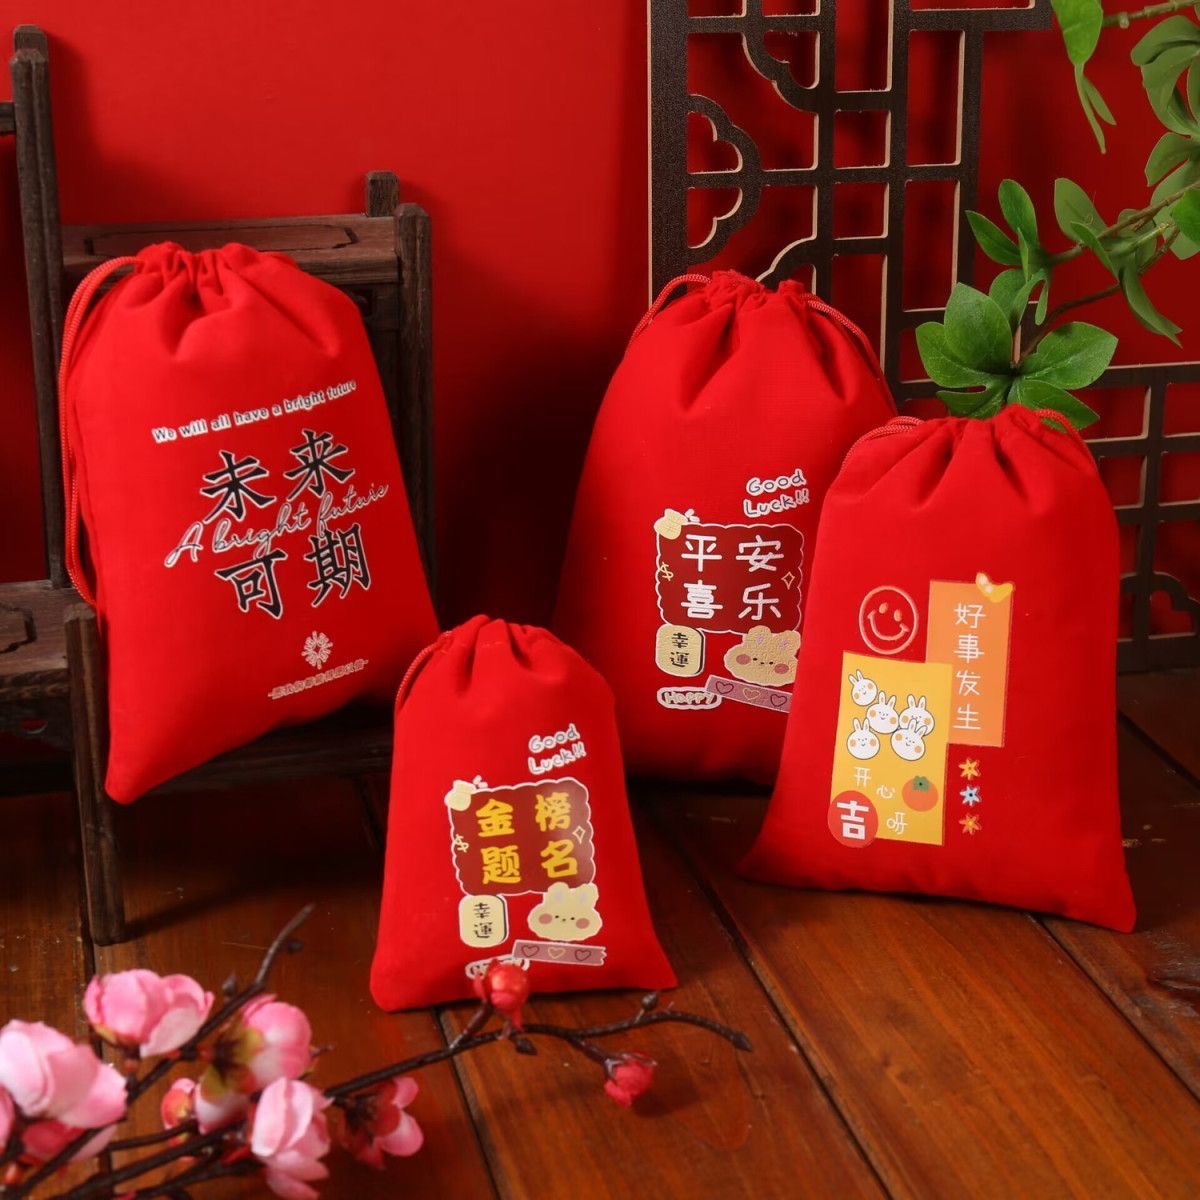 大红绒布袋多尺寸节日新年美好祝福词语礼品袋糖果首饰礼物包装袋